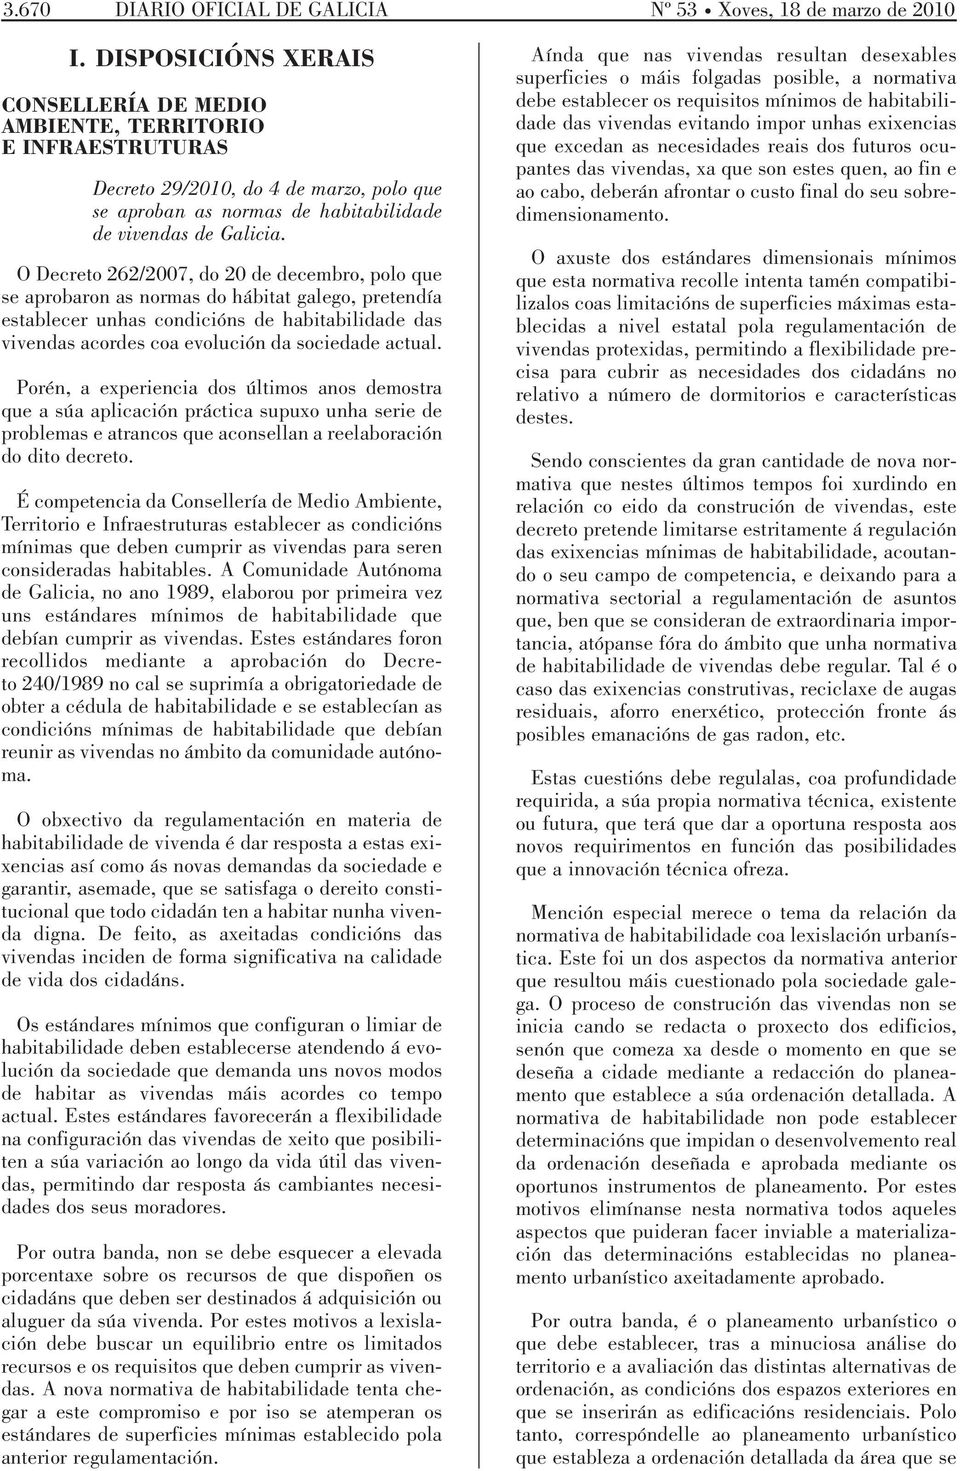 O Decreto 262/2007, do 20 de decembro, polo que se aprobaron as normas do hábitat galego, pretendía establecer unhas condicións de habitabilidade das vivendas acordes coa evolución da sociedade